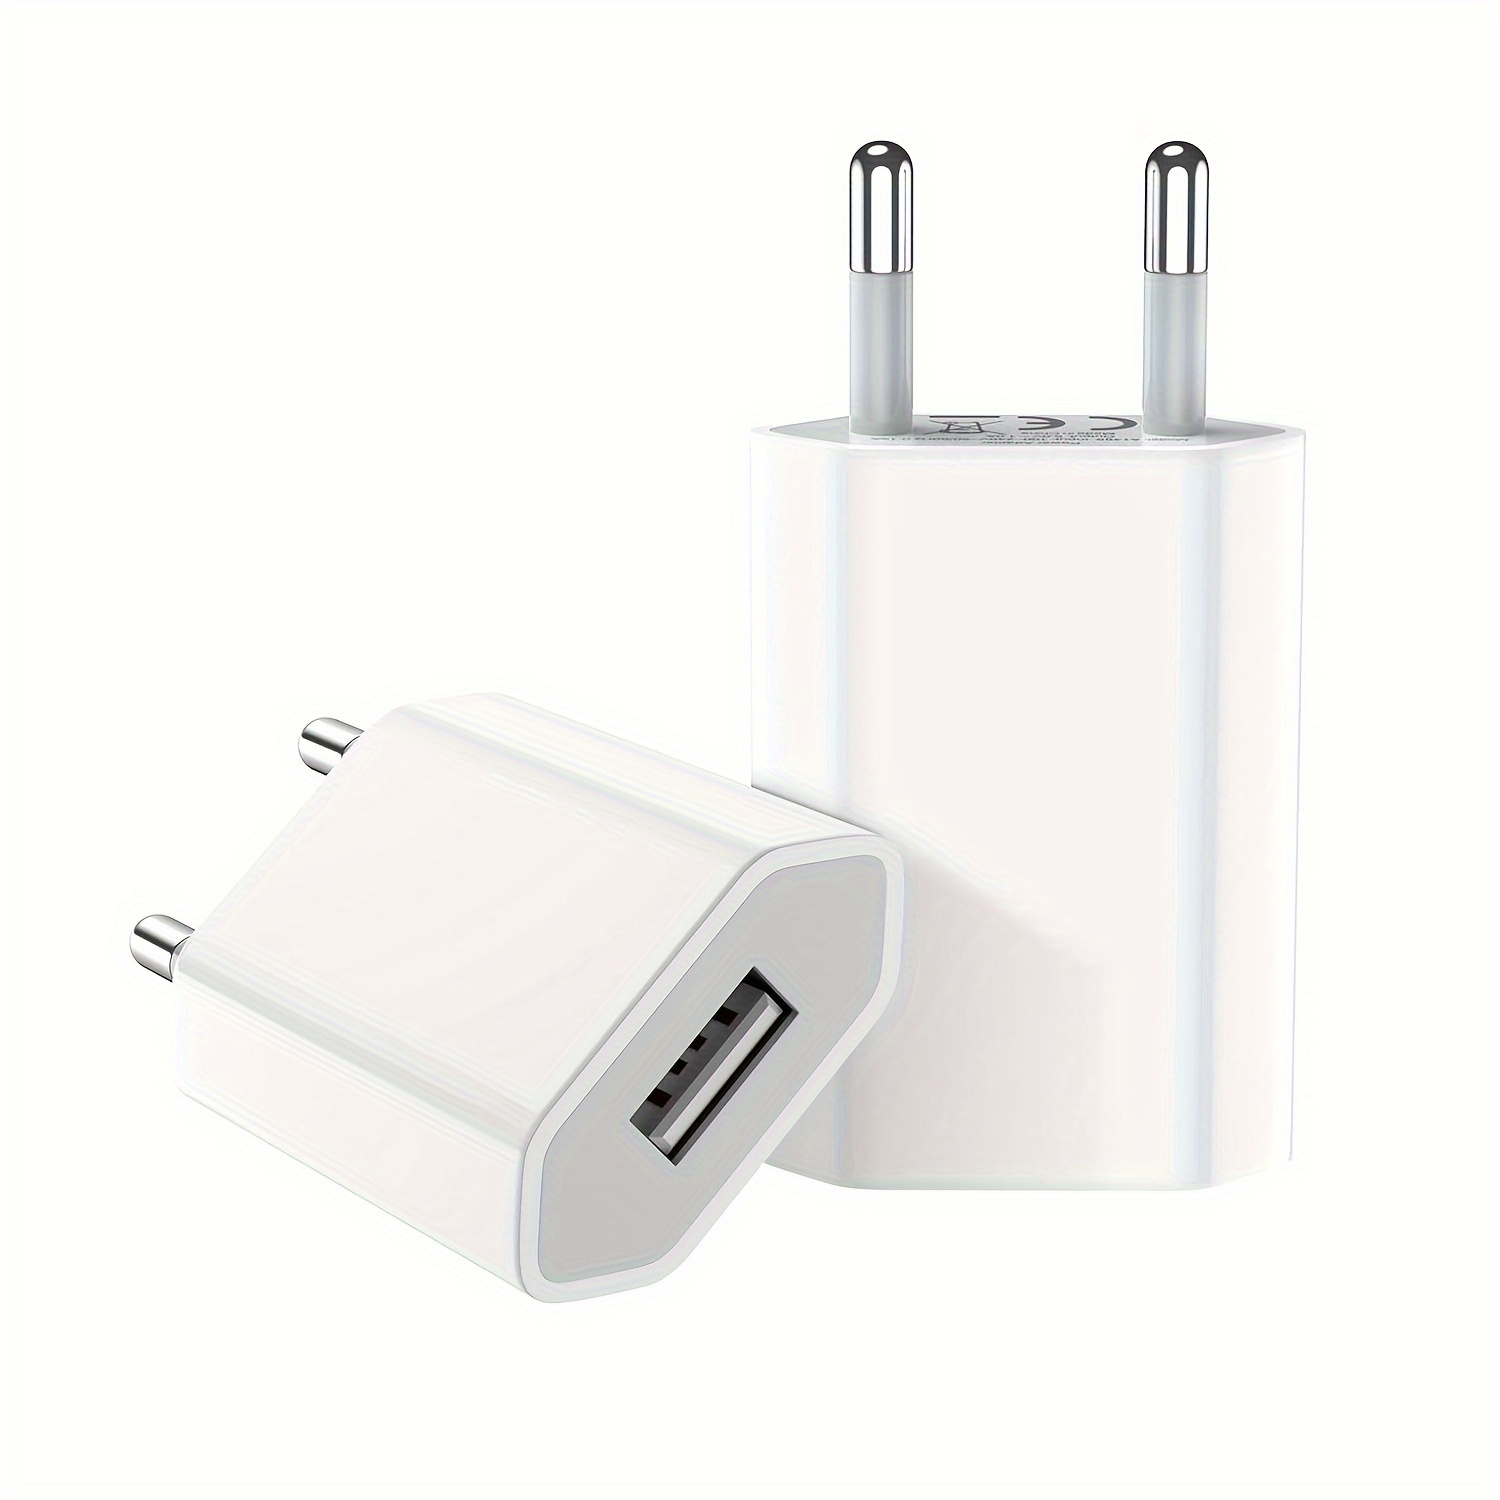 

2/5pcs Adaptateur de prise de chargeur d'alimentation USB Design fin Prise 5V1A Universel Compatible avec les téléphones portables, appareils photo, MP3, etc. (Blanc)